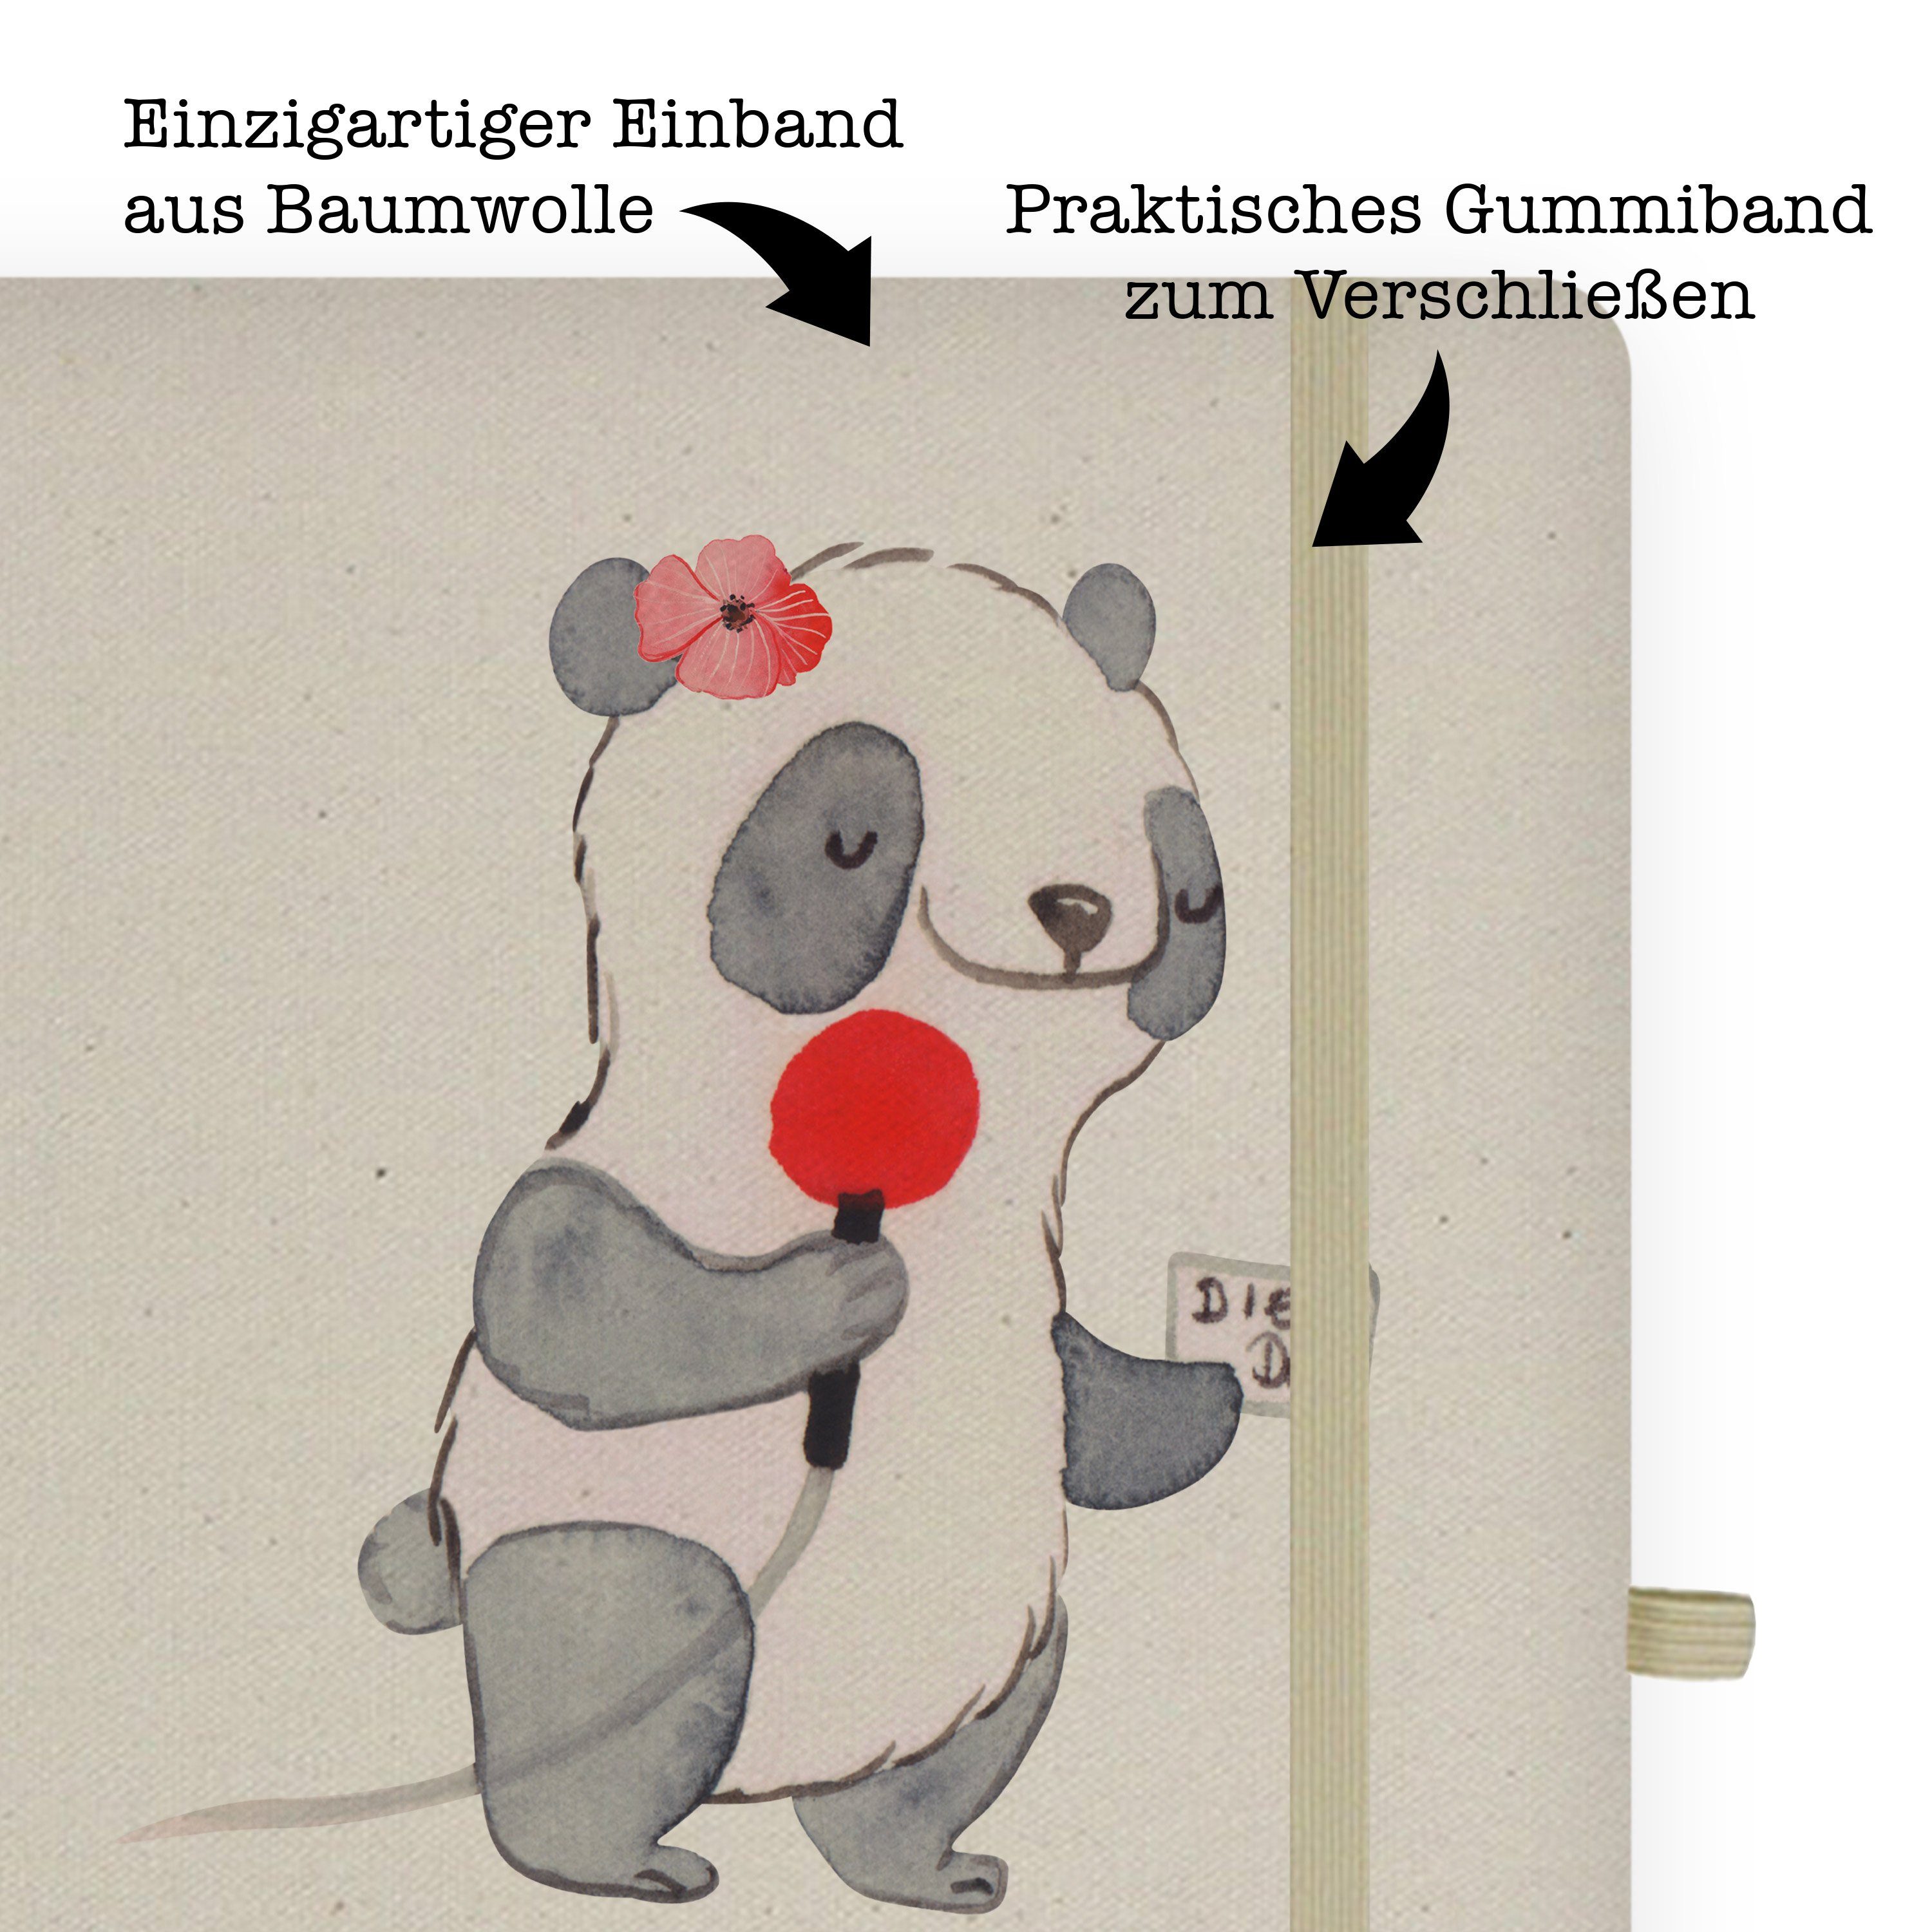 Transparent Mrs. Eint Panda Pressereferentin Mitarbeiter, & Notizbuch - mit Herz Panda Mr. Mrs. Geschenk, - Mr. &